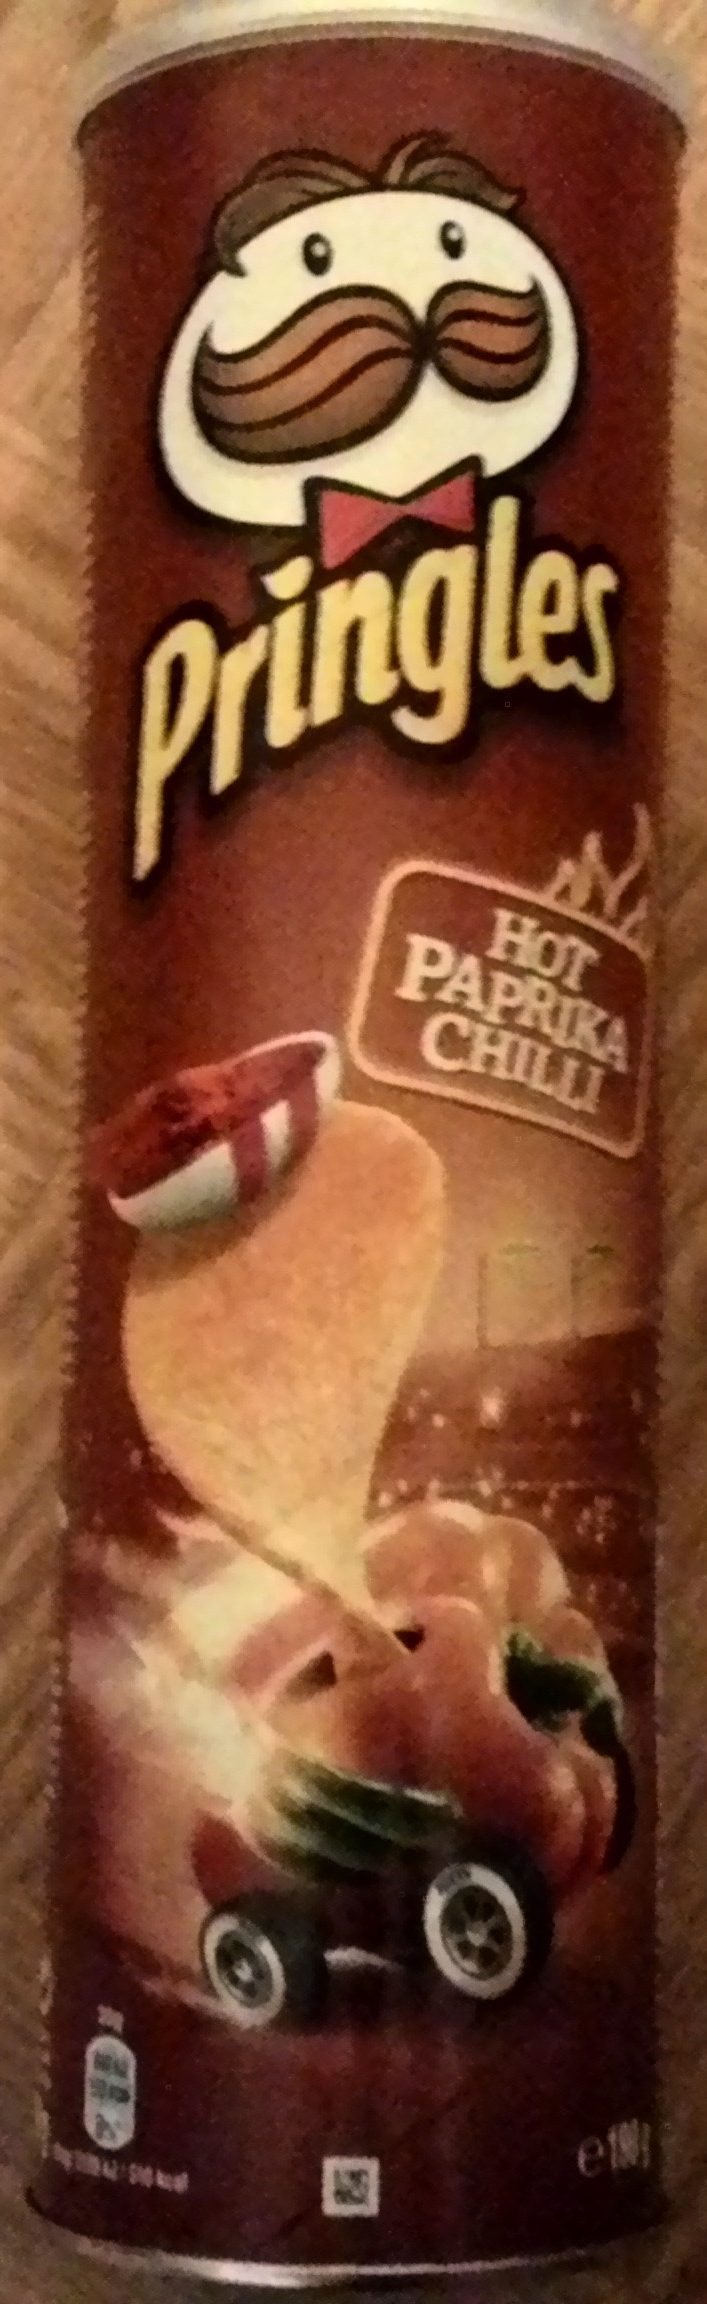 Hot Paprika Chilli - Produkt - en